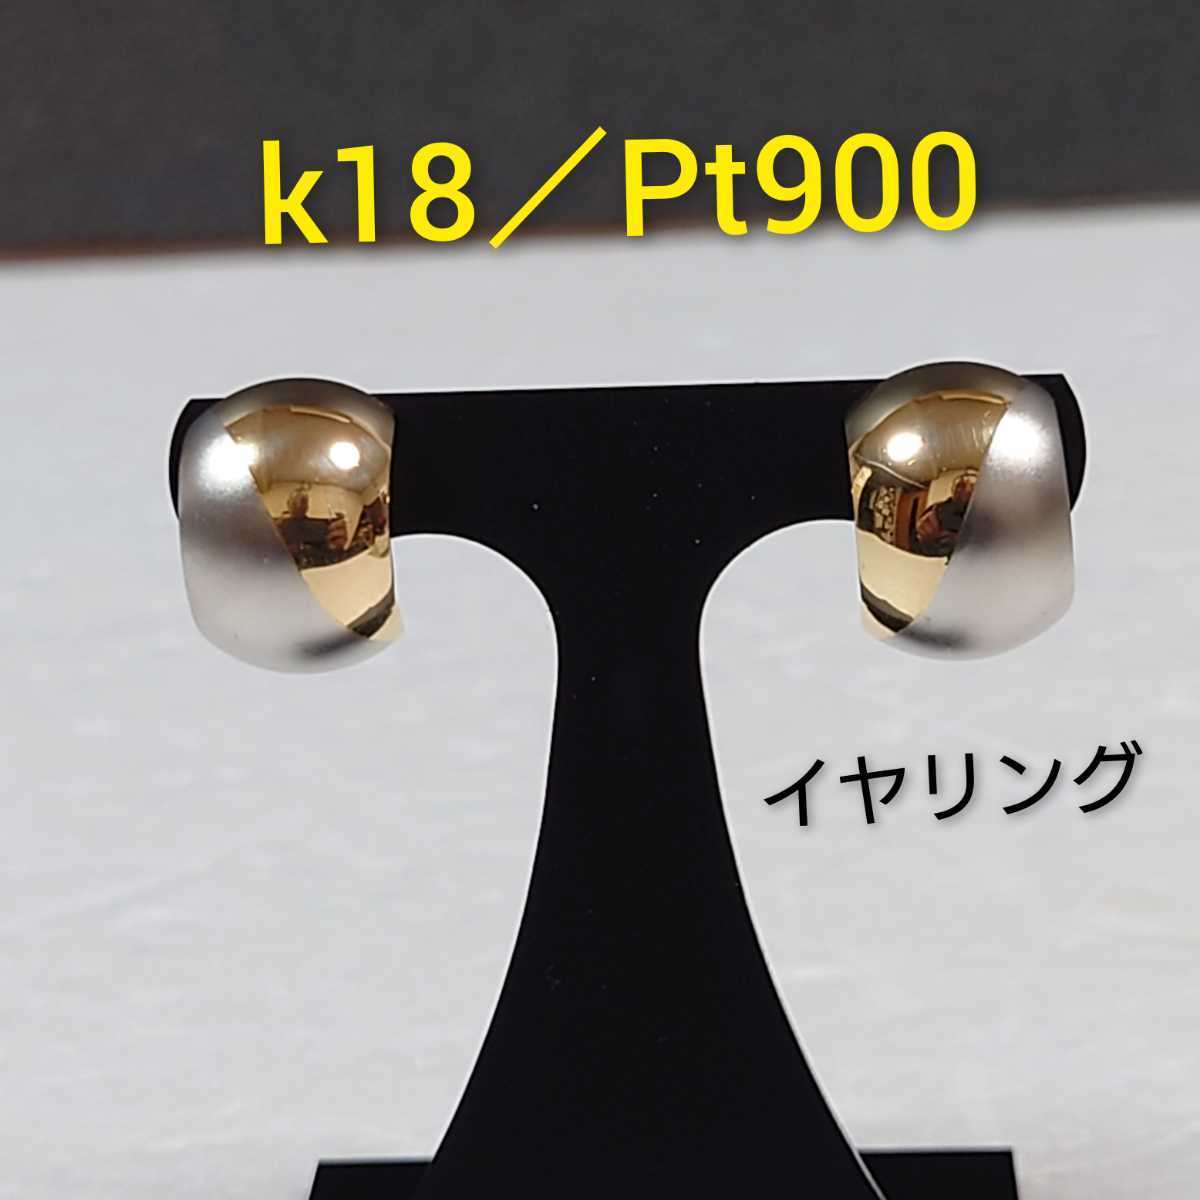 k18/Pt900 コンビ カーブドイヤリング